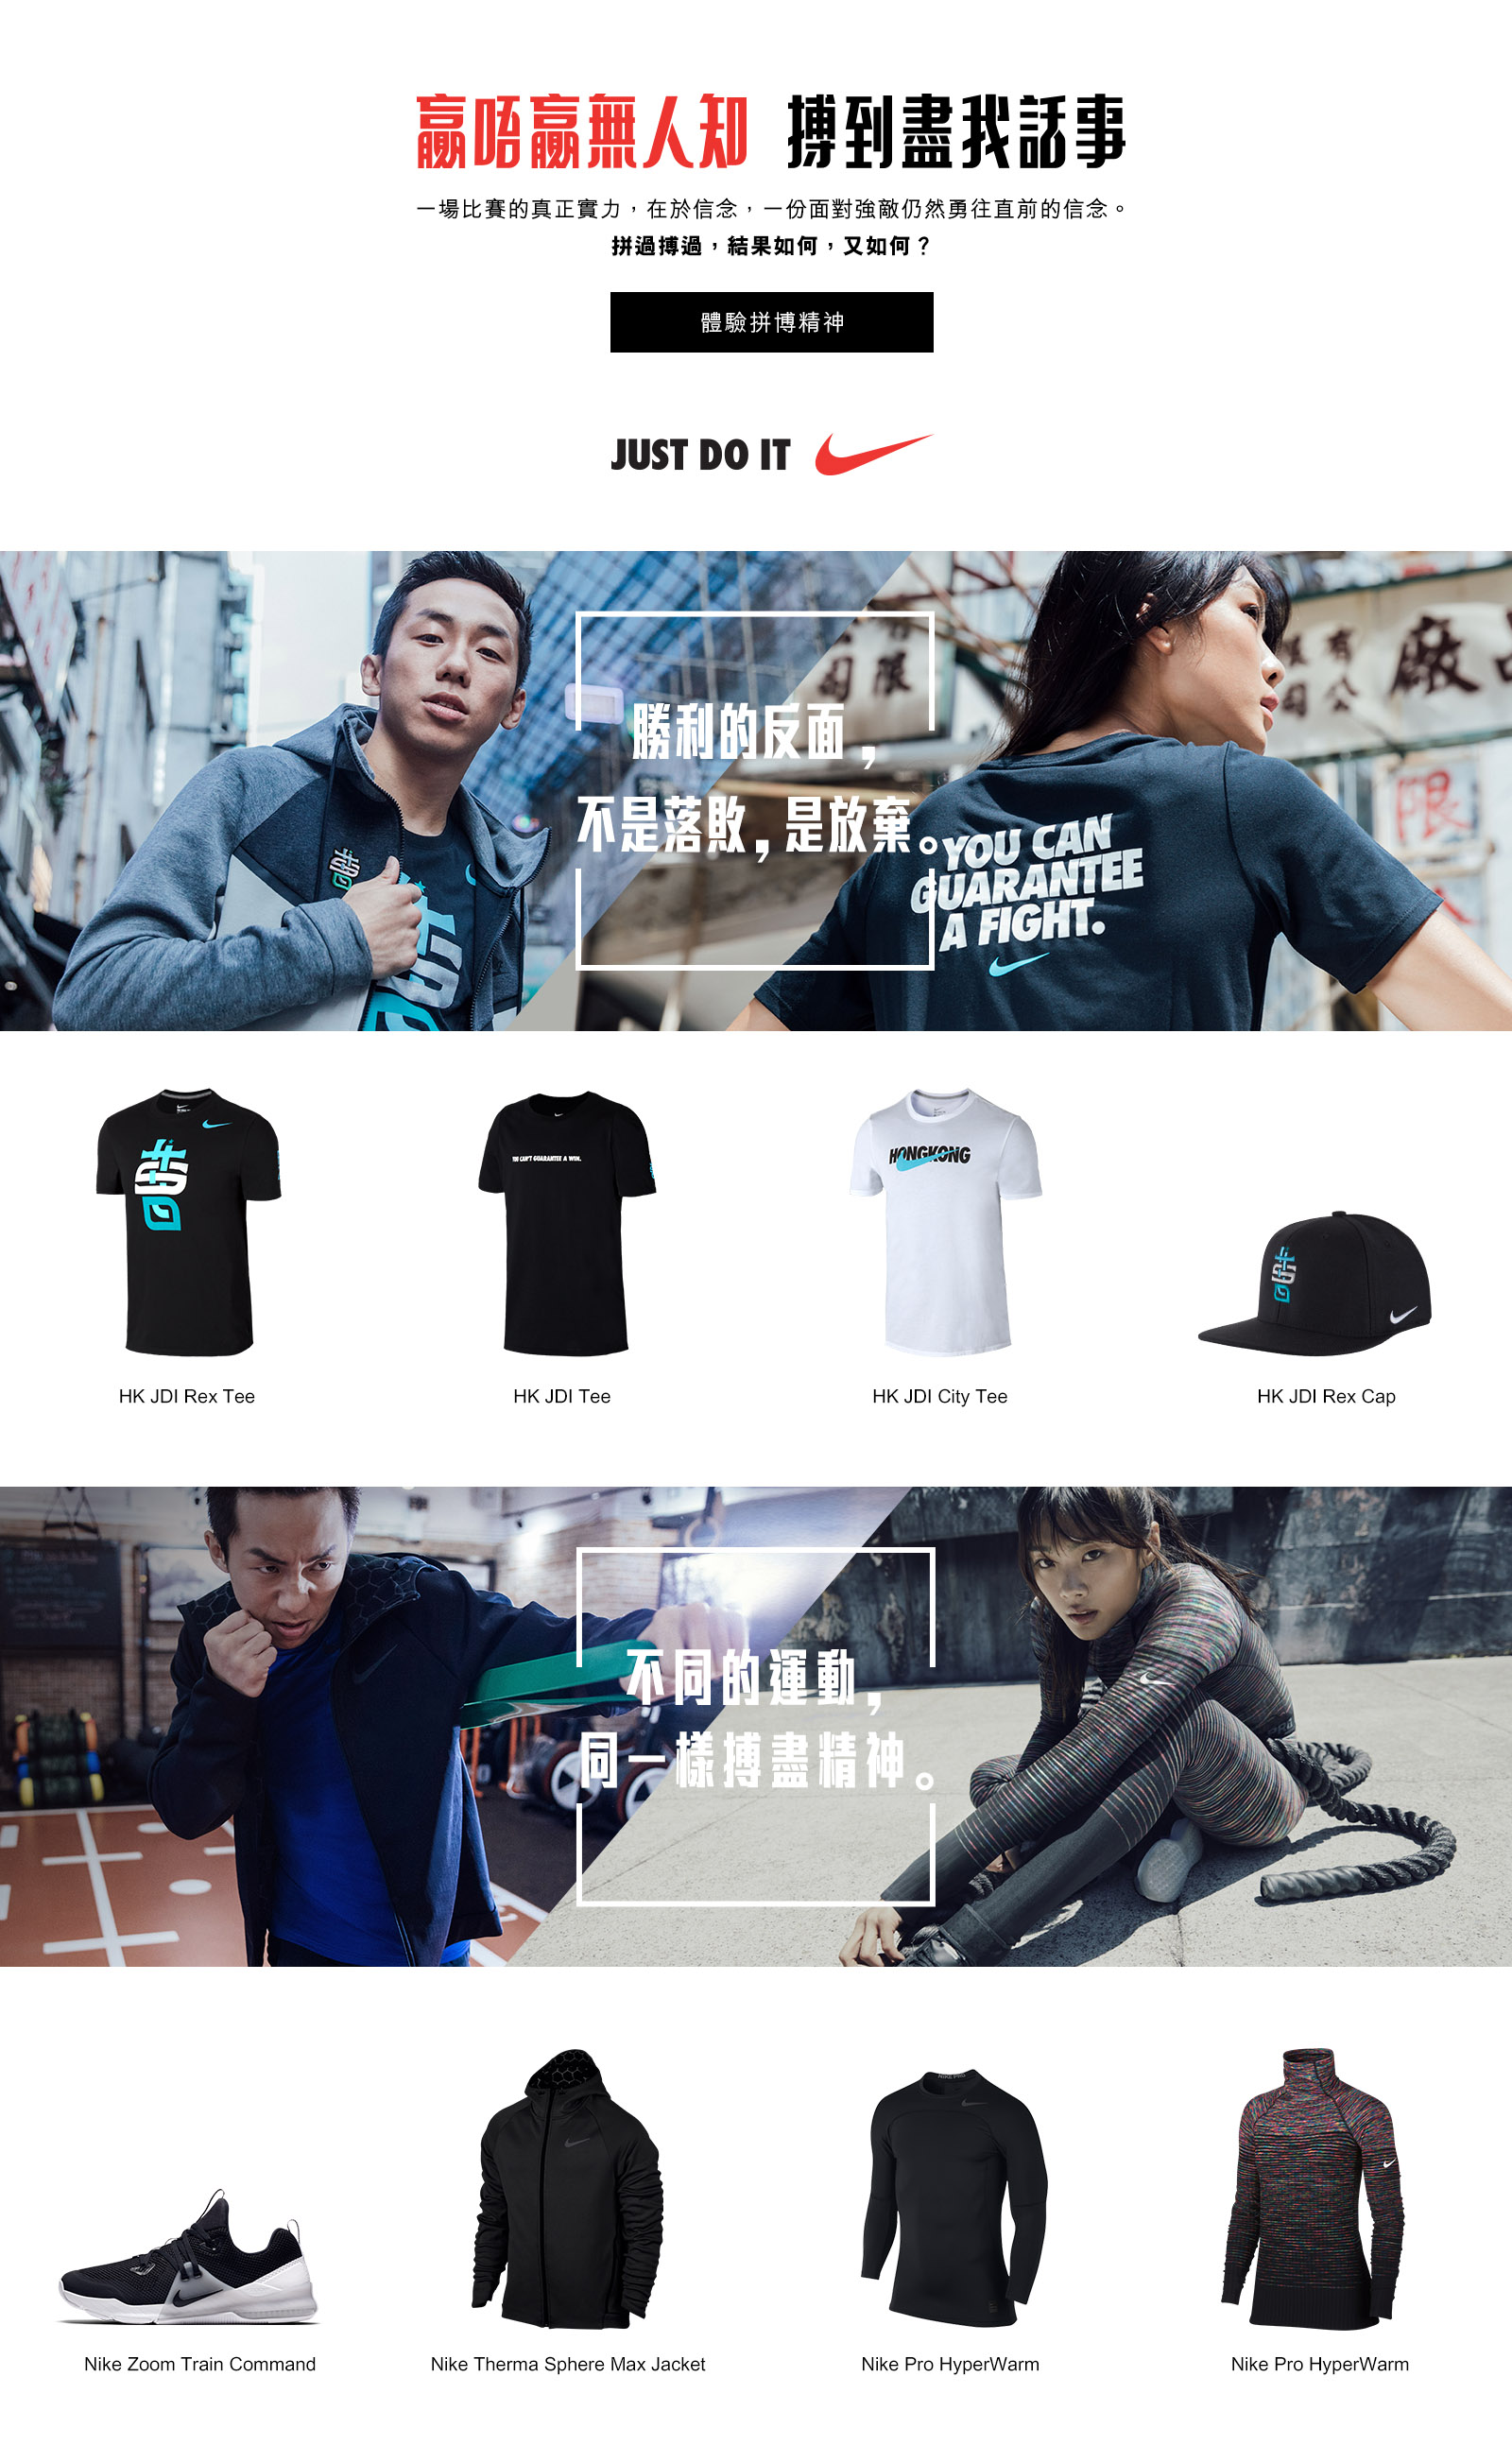 Nike HK Official site. Nike.com